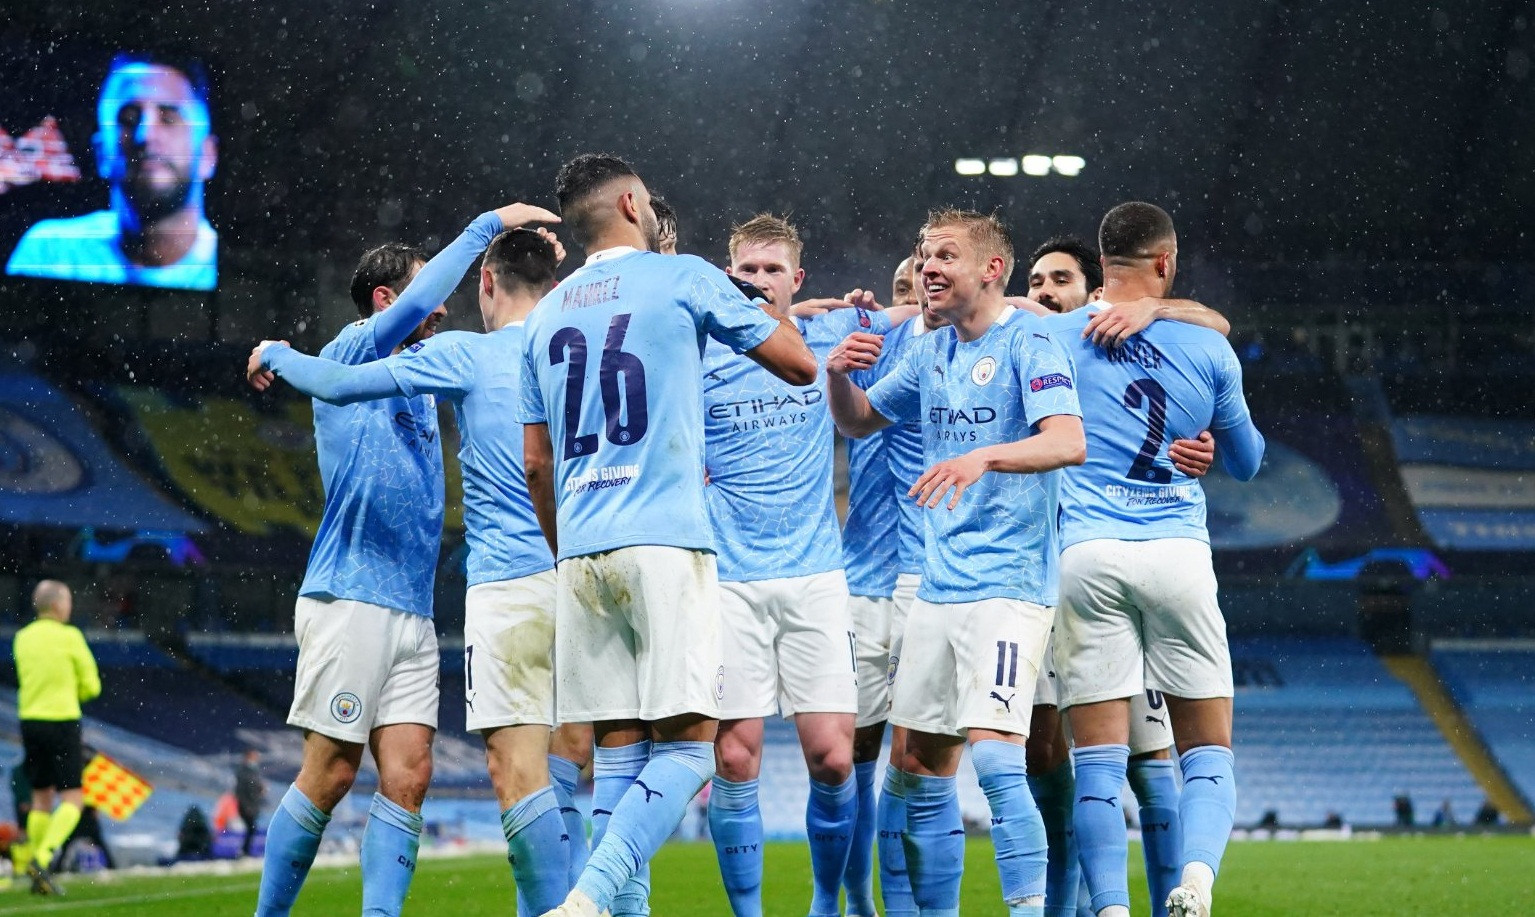 Manchester City berhasil melaju ke final usai menang 2-0 di leg kedua semifinal Liga Champions 2020/2021, Rabu 5 Mei 2021 di Stadion Etihad. (Foto: Twitter/@ManCity)